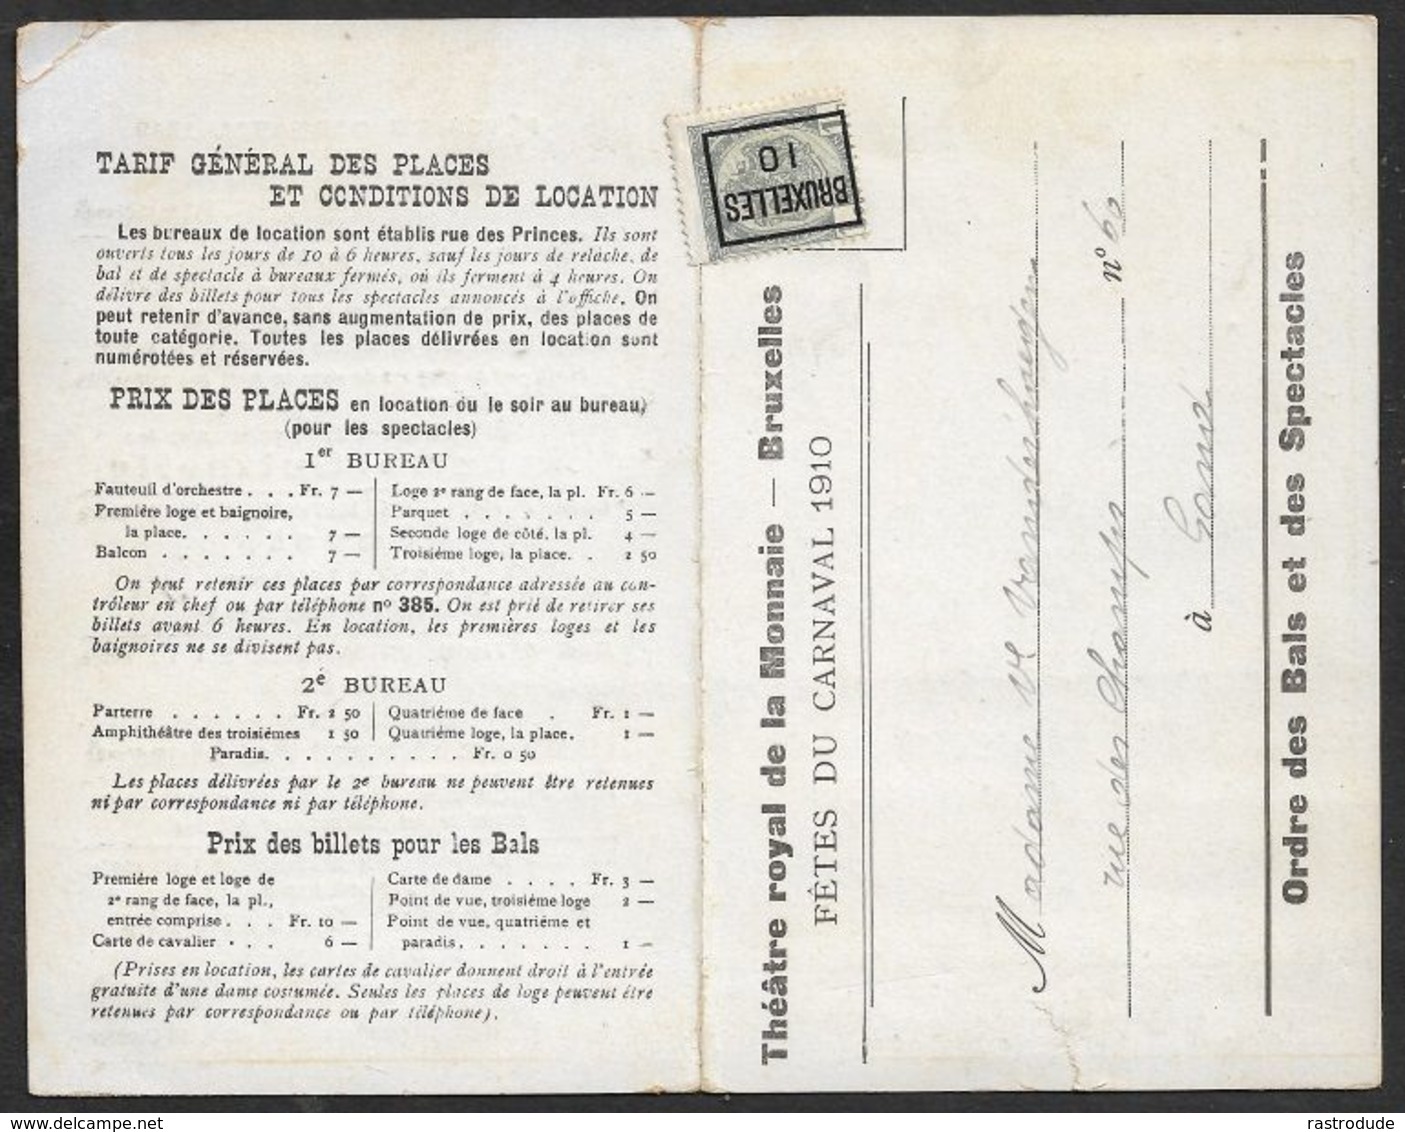 1910 BELGIQUE - IMPRIMÉ PREOB. 1c  A GAND  - FETES DU CARNAVAL 1910 - GRAND BAL MASQUÉ - THEATRE ROYAL DE LA MONNAIE - Rollenmarken 1900-09